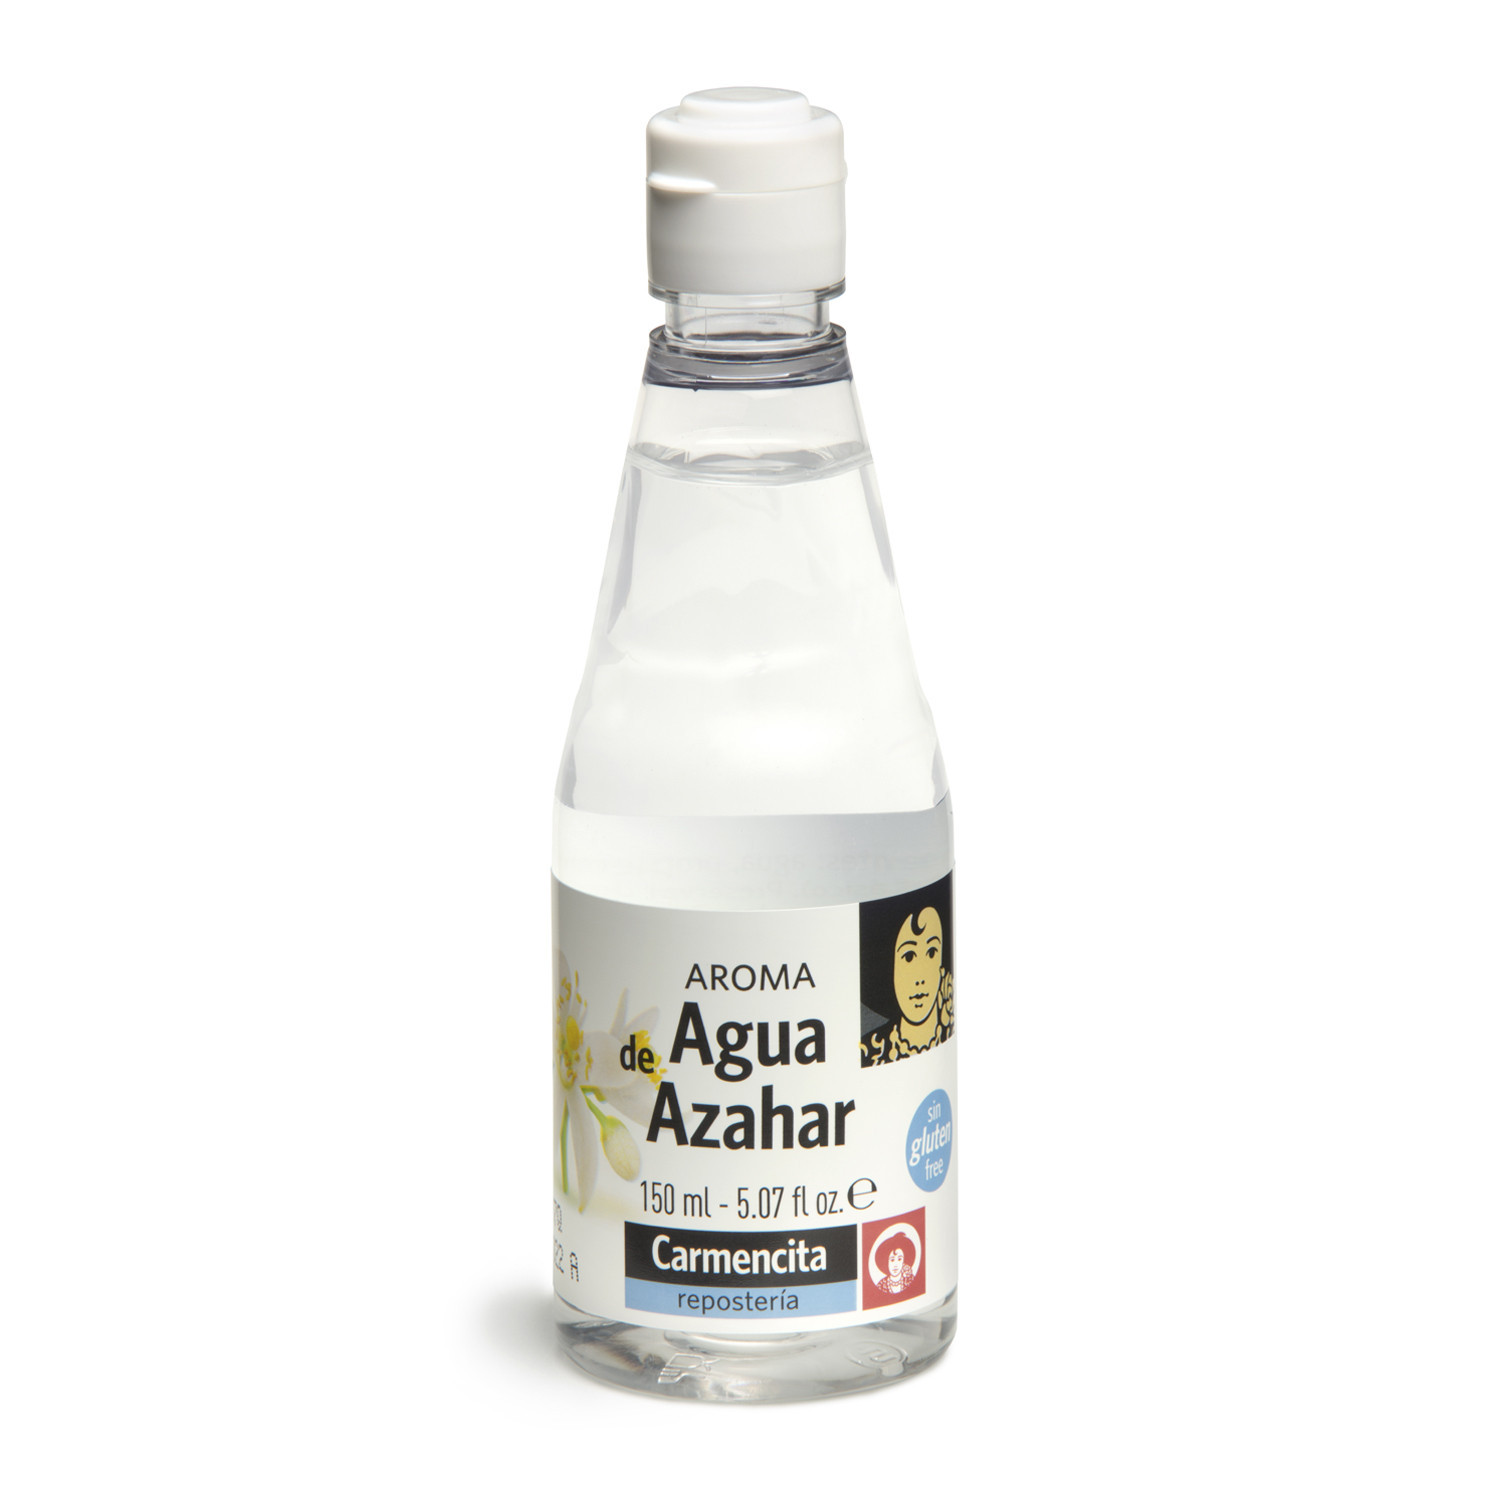 Agua de Azahar